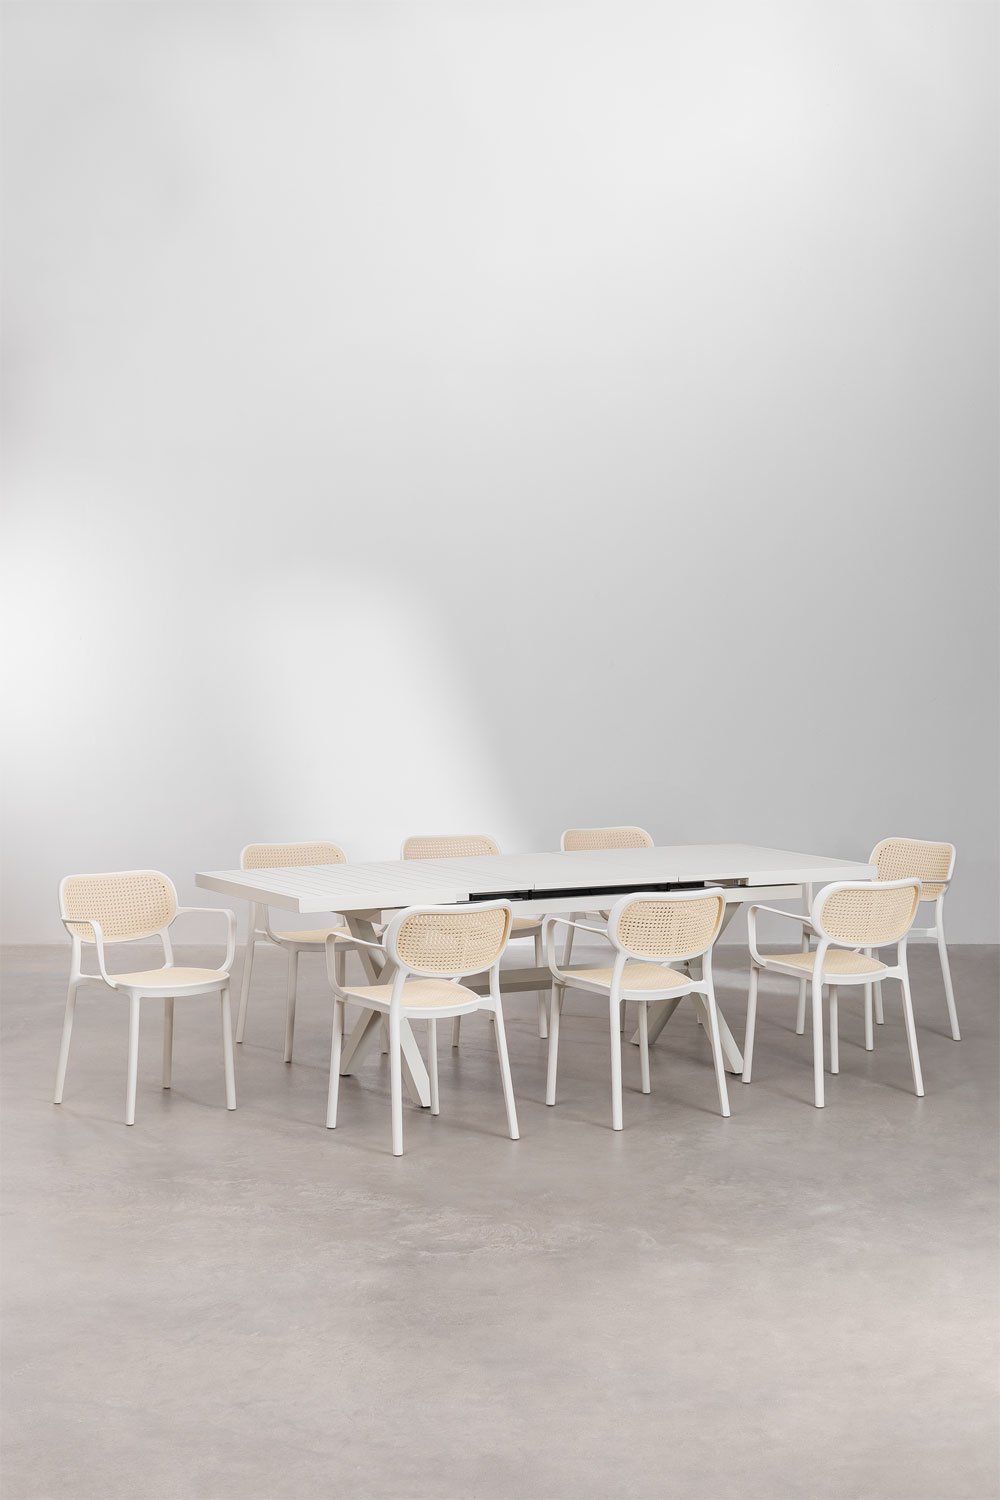 Ensemble table de jardin rectangulaire extensible Karena en aluminium (180-240x90 cm) et 8 chaises de jardin Omara avec accoudoi, image de la galerie 1